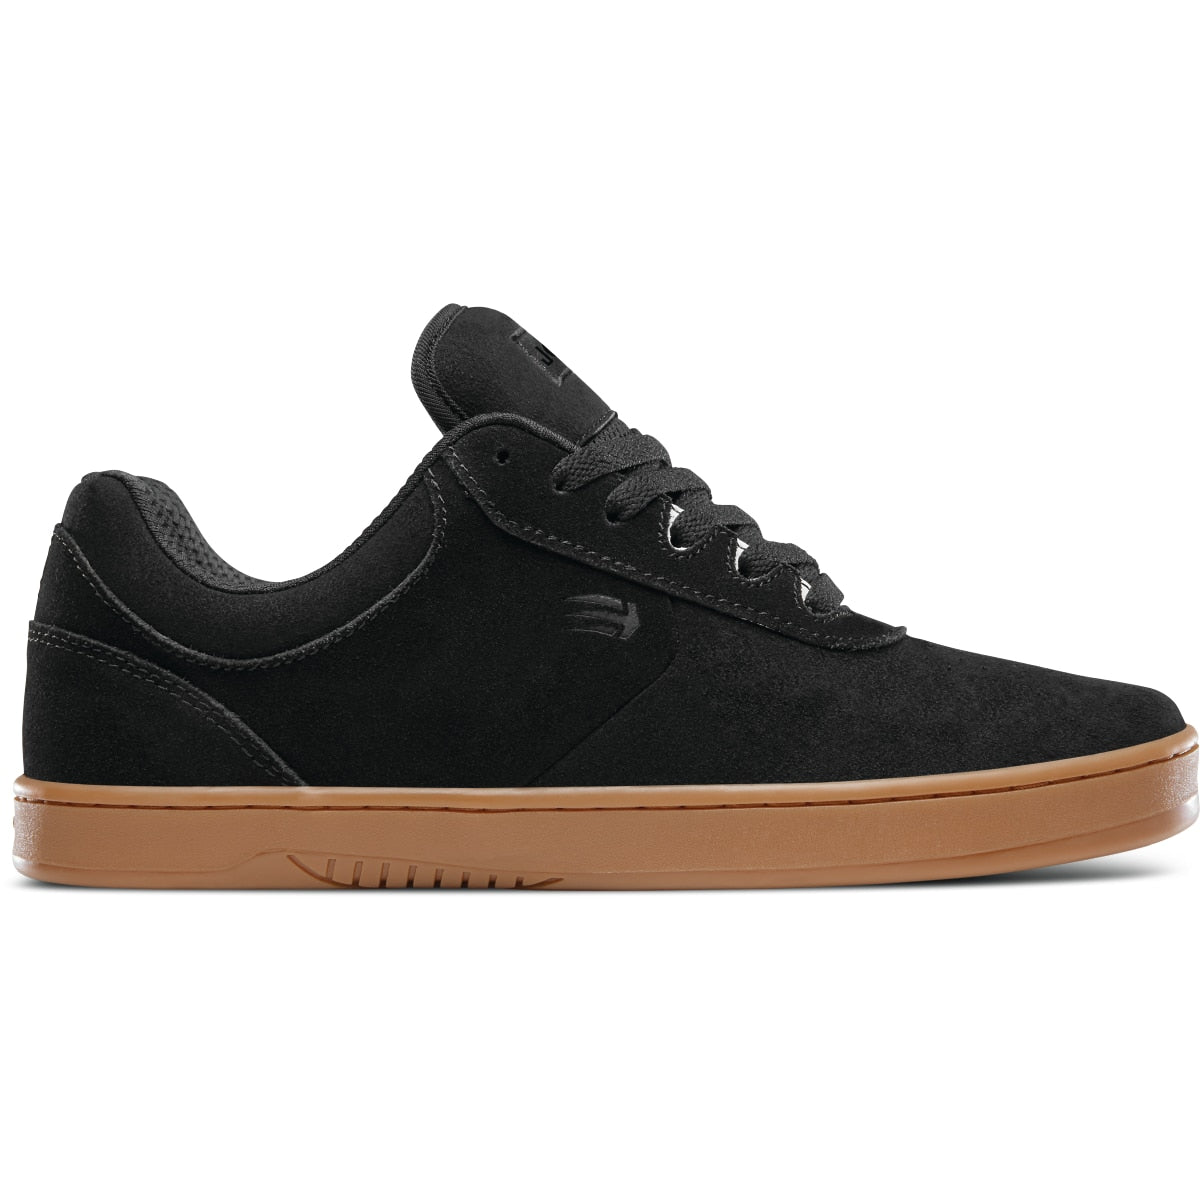 Etnies Chris Joslin Skateboard Shoe - Black/Gum